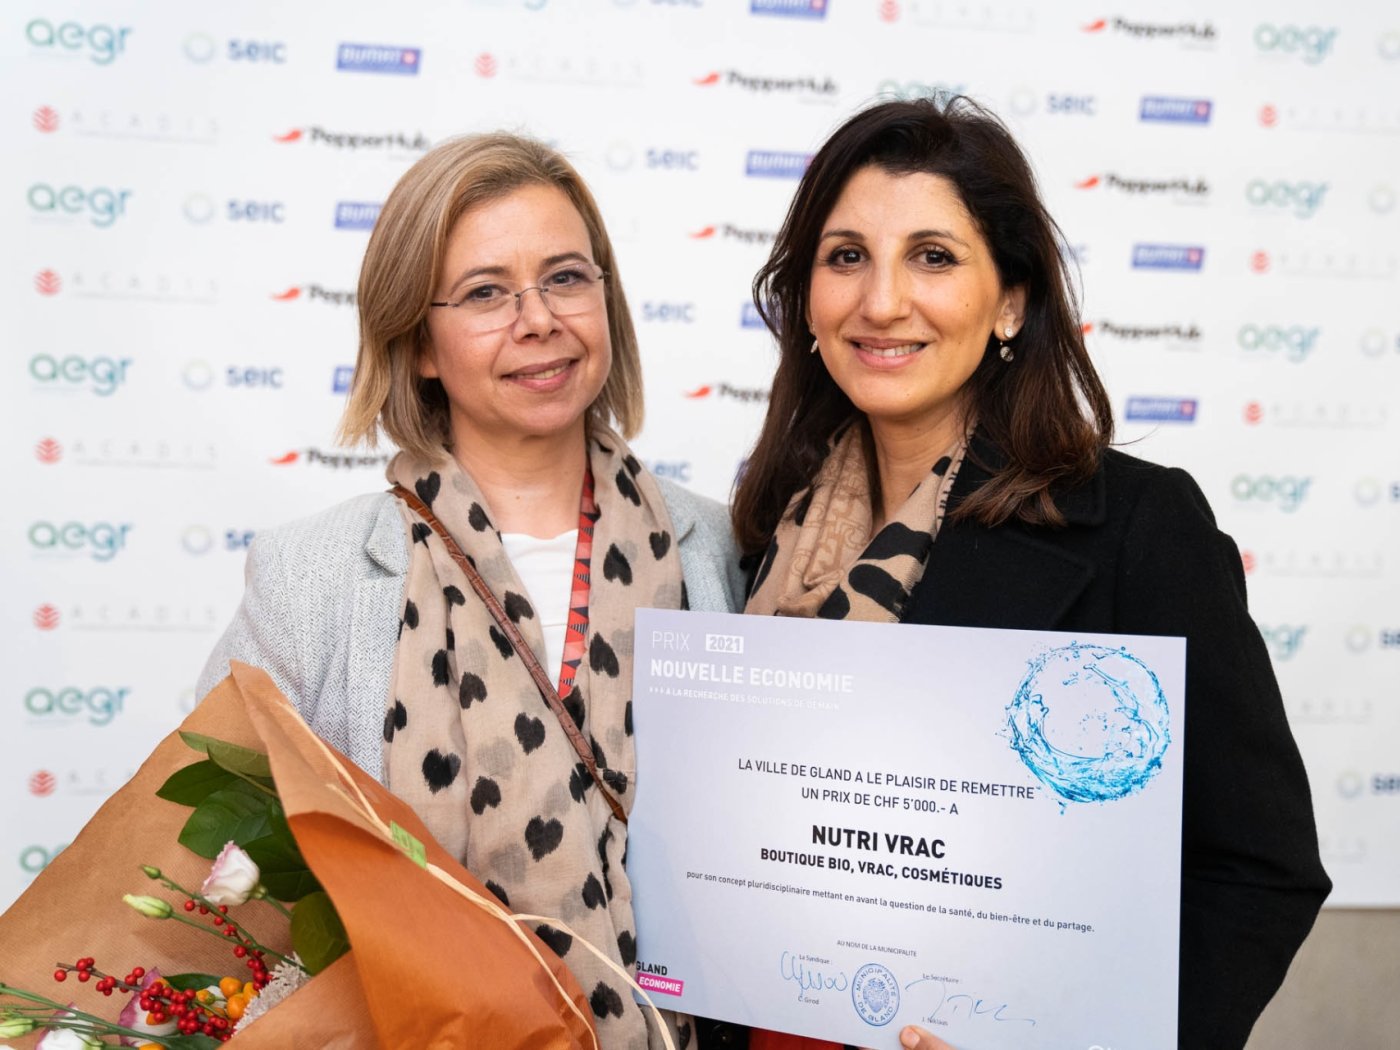 La Ville de Gland a récompensé Nutri Vrac, et ses cofondatrices Marta Klose et Hanene Mahtali.